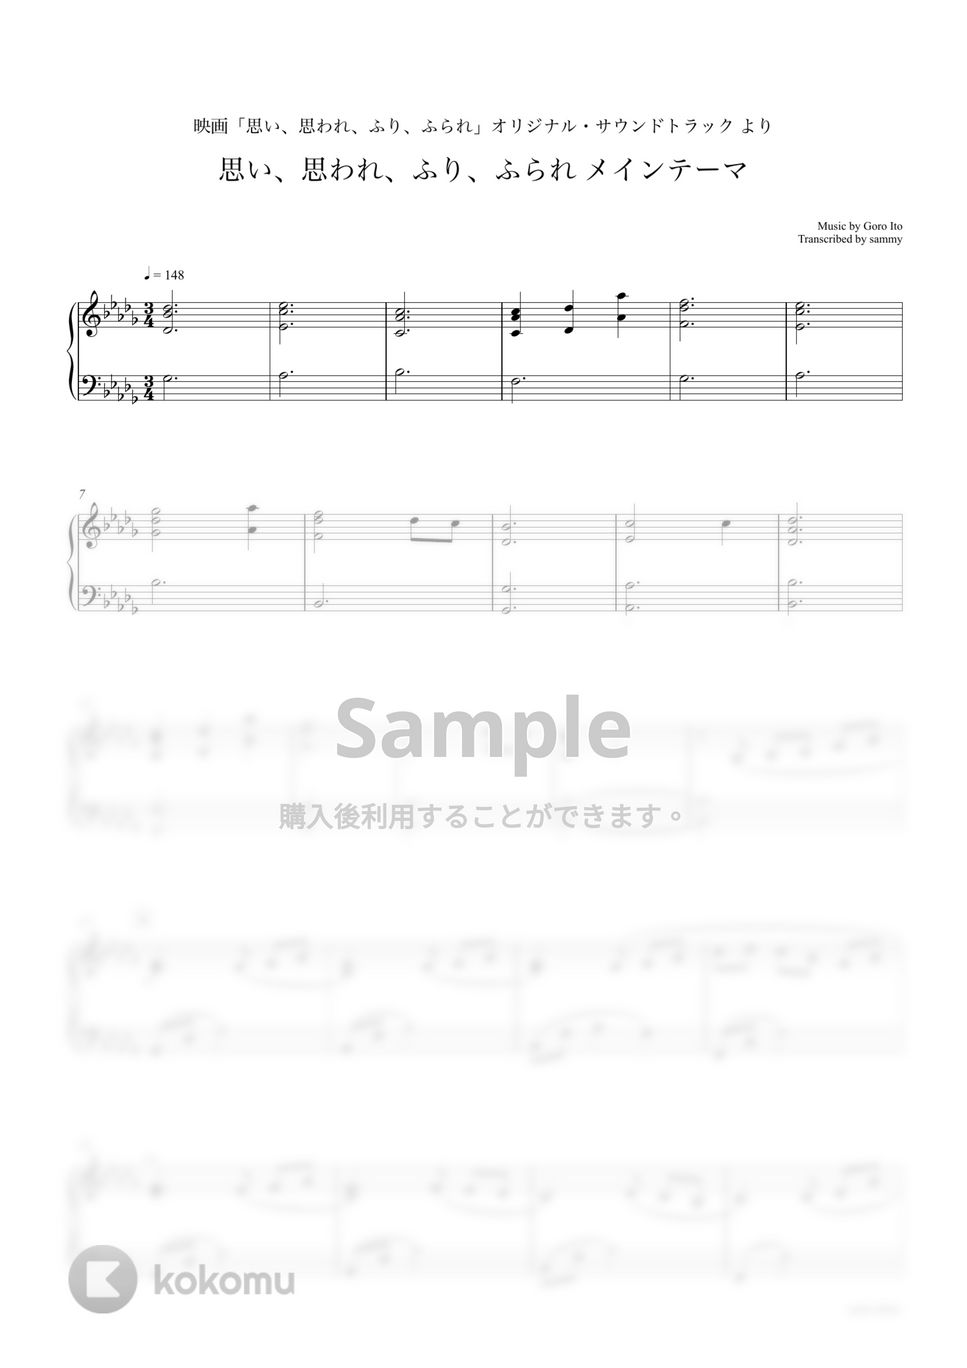 映画『思い、思われ、ふり、ふられ』OST - 映画『思い、思われ、ふり、ふられ』OST 3曲セット by sammy